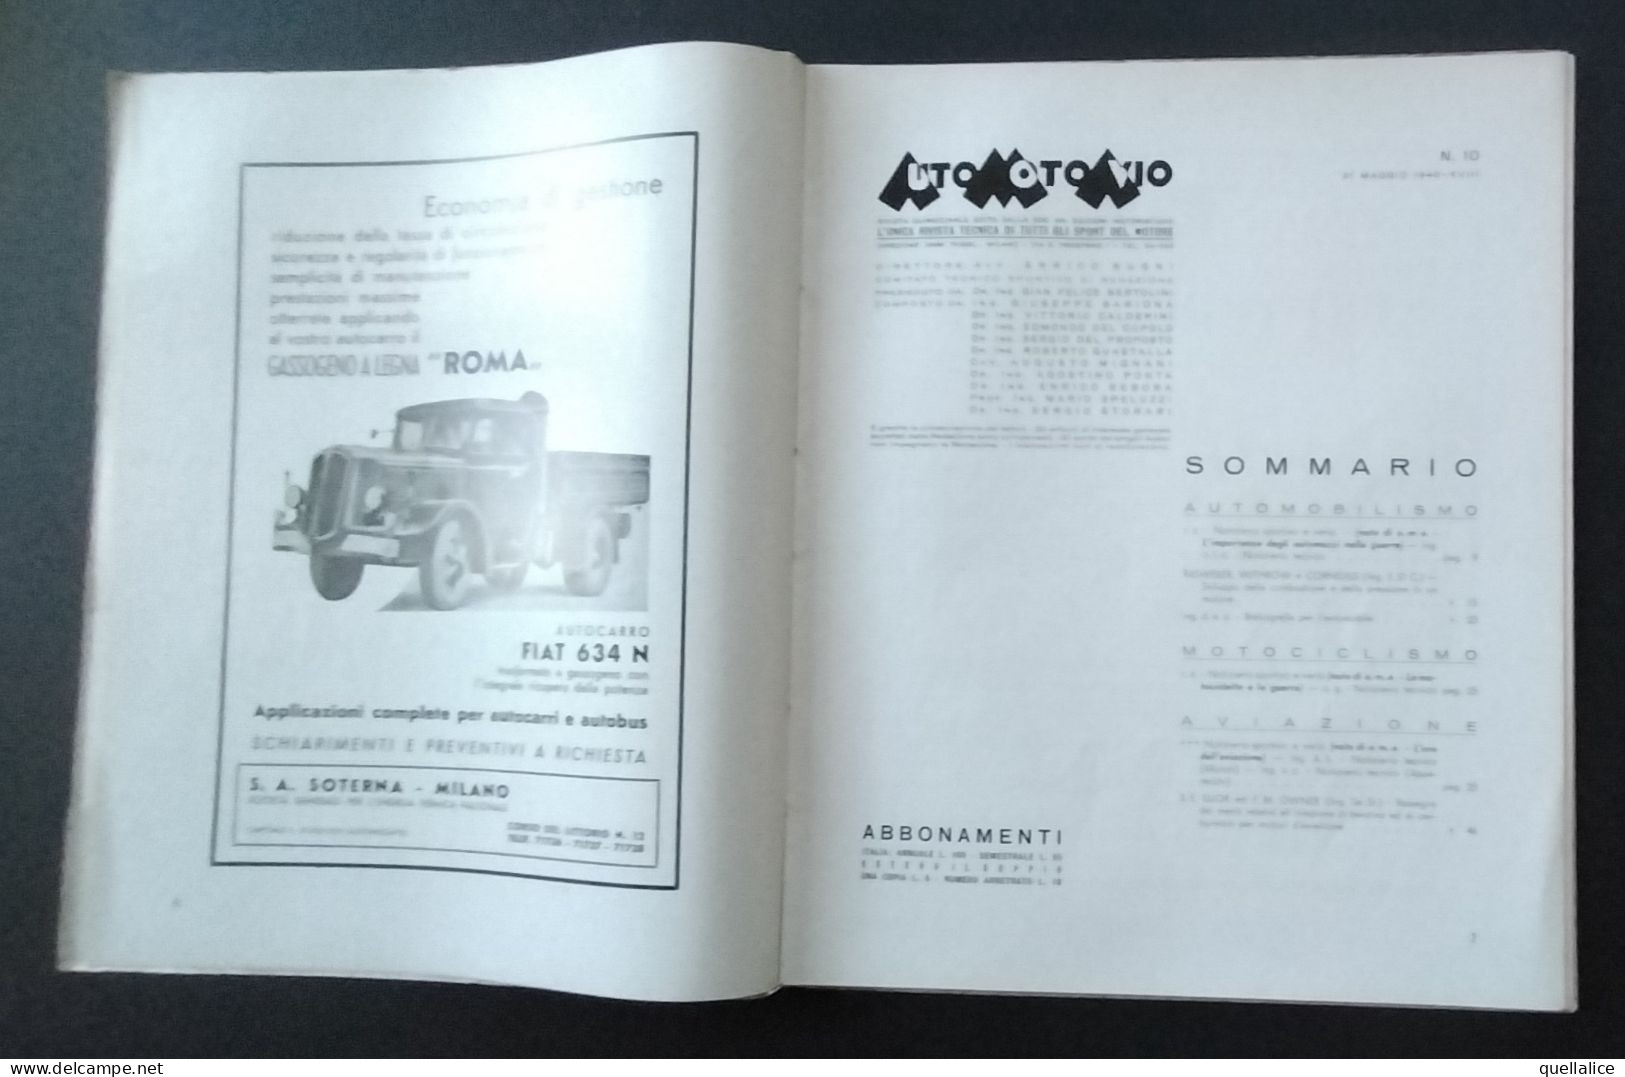 03937 "AUTO MOTO AVIO - NR 10 31 MAGGIO 1940 - AUTOMOBILISMO, MOTOCICLISMO, AVIAZIONE - DATI TECNICI" ORIG. - Engines